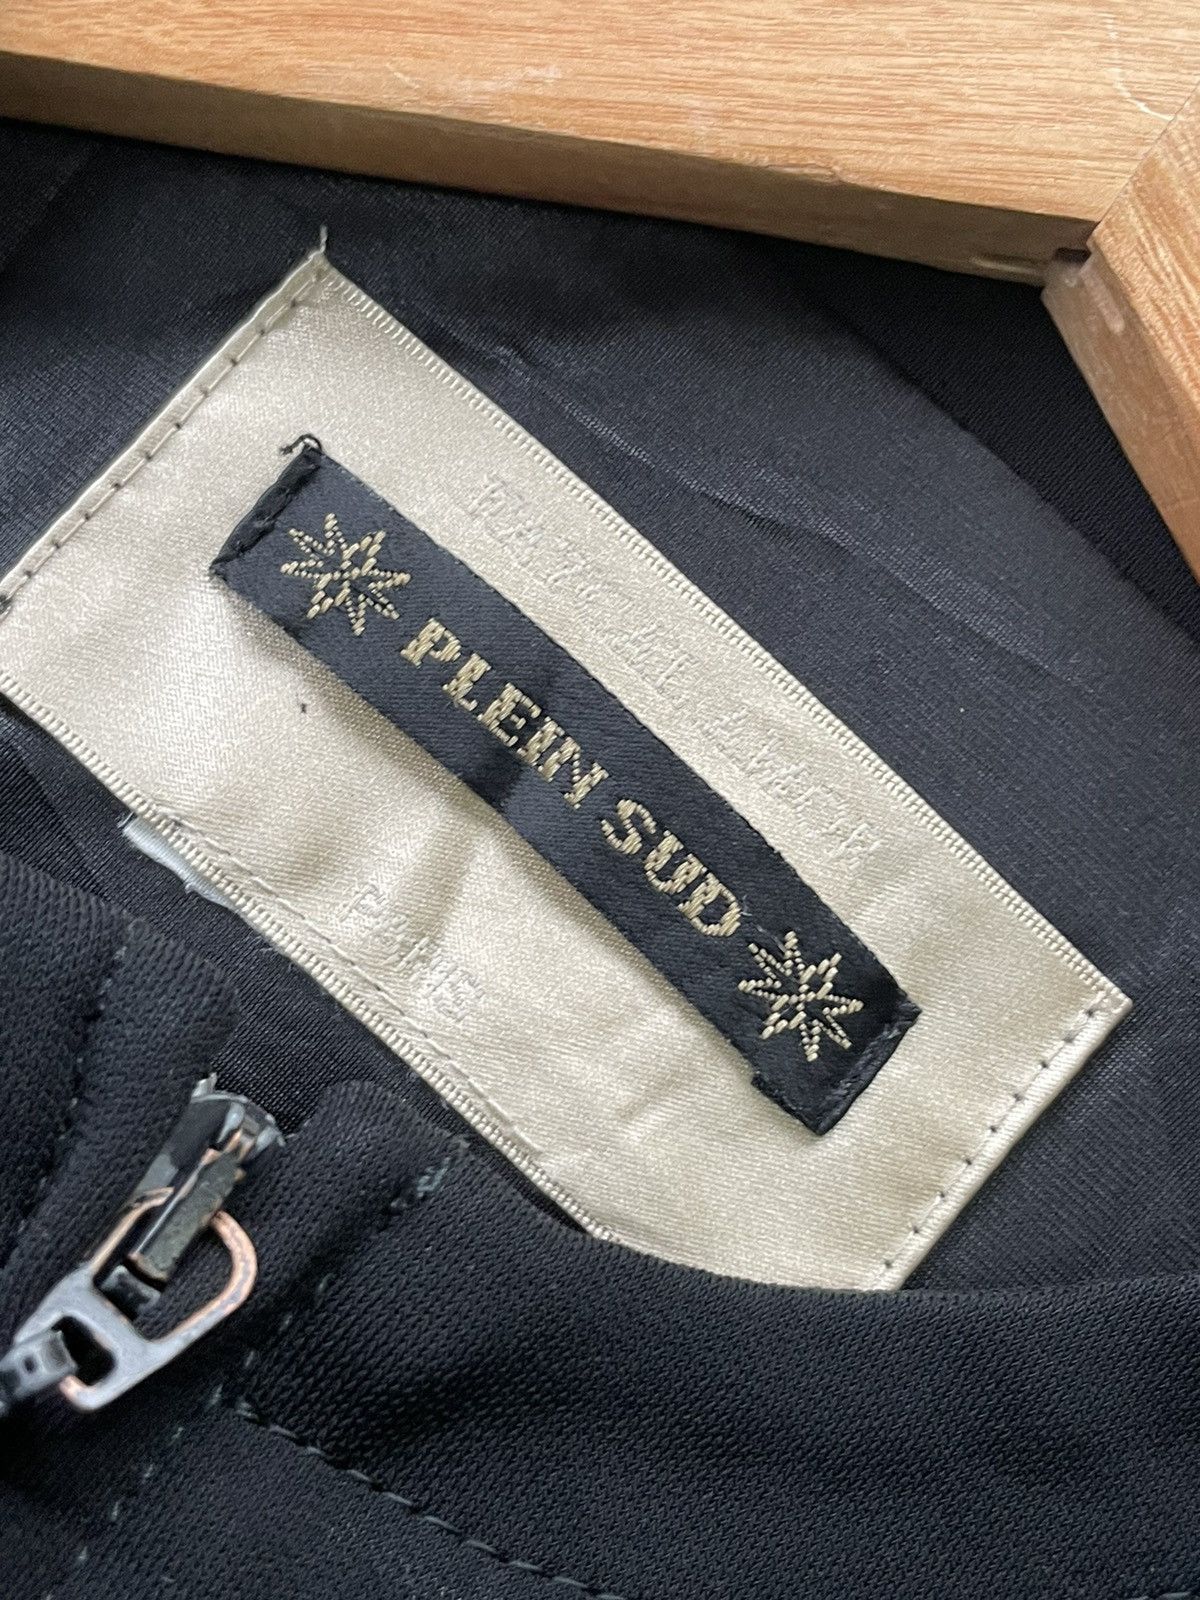 Vintage 🔥STEALS🔥Plein Sud Faycal Amor Paris Jacket Size US S / EU 44-46 / 1 - 10 Thumbnail